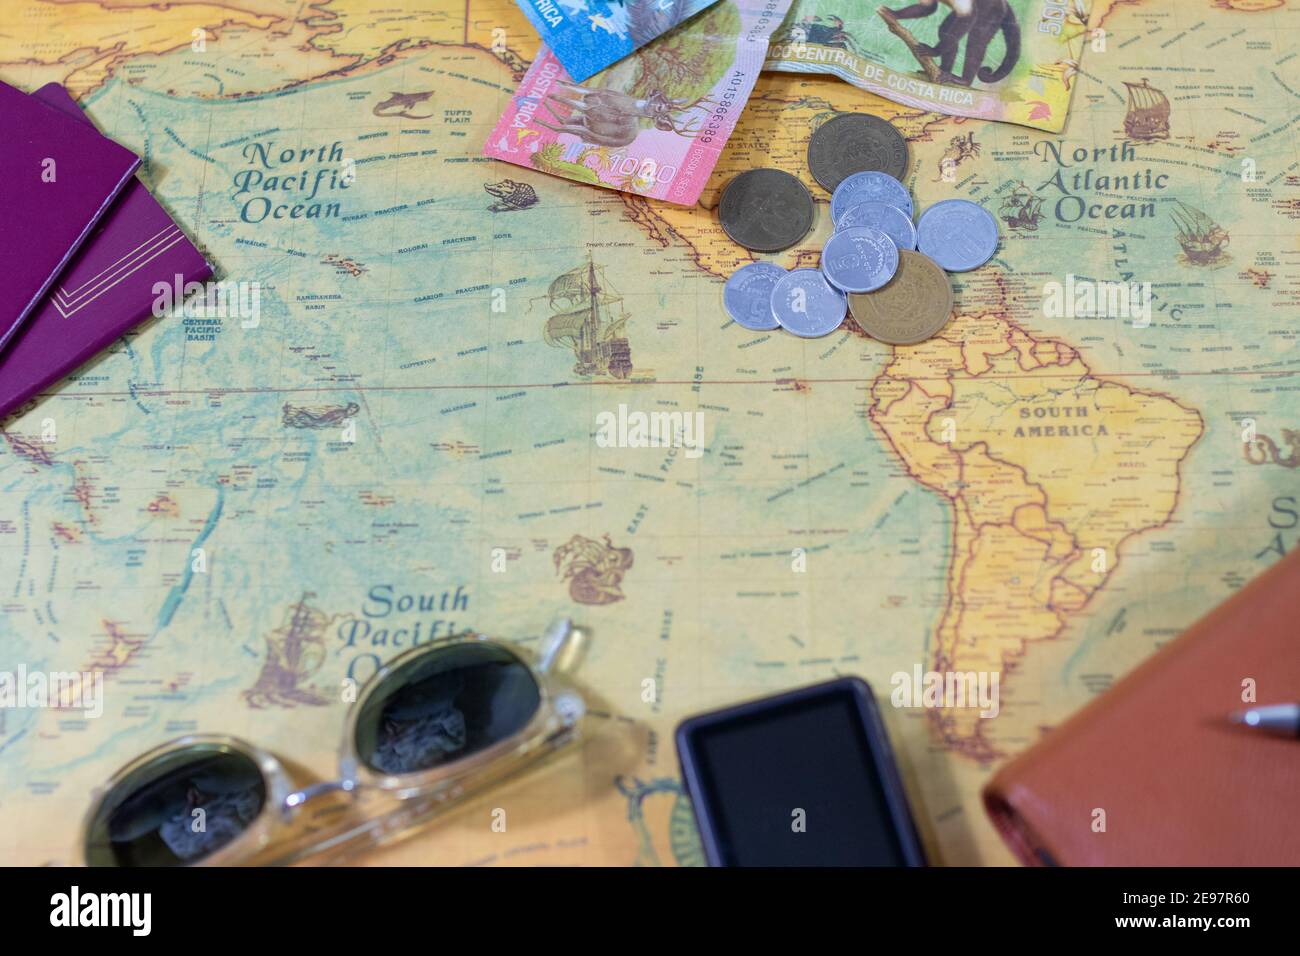 vue de dessus des accessoires de voyageur. carte du monde, passeports, lunettes de soleil, monnaie, appareil photo et agenda. concept de préparation de voyage Banque D'Images